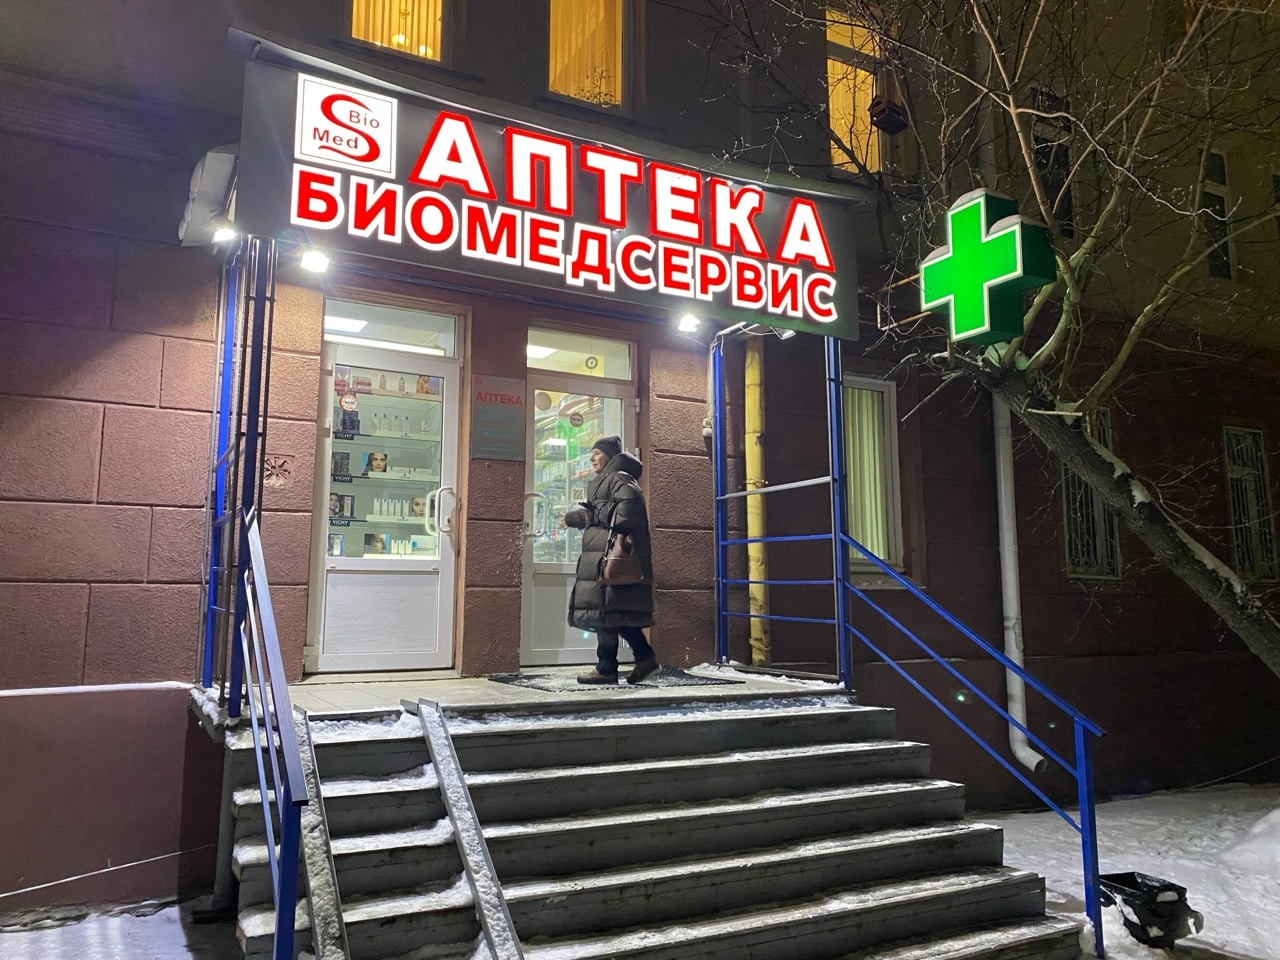 Основатель сети аптек Олег Мирошник: «Свой шаг в медицину я считаю случайным, но правильным выбором»